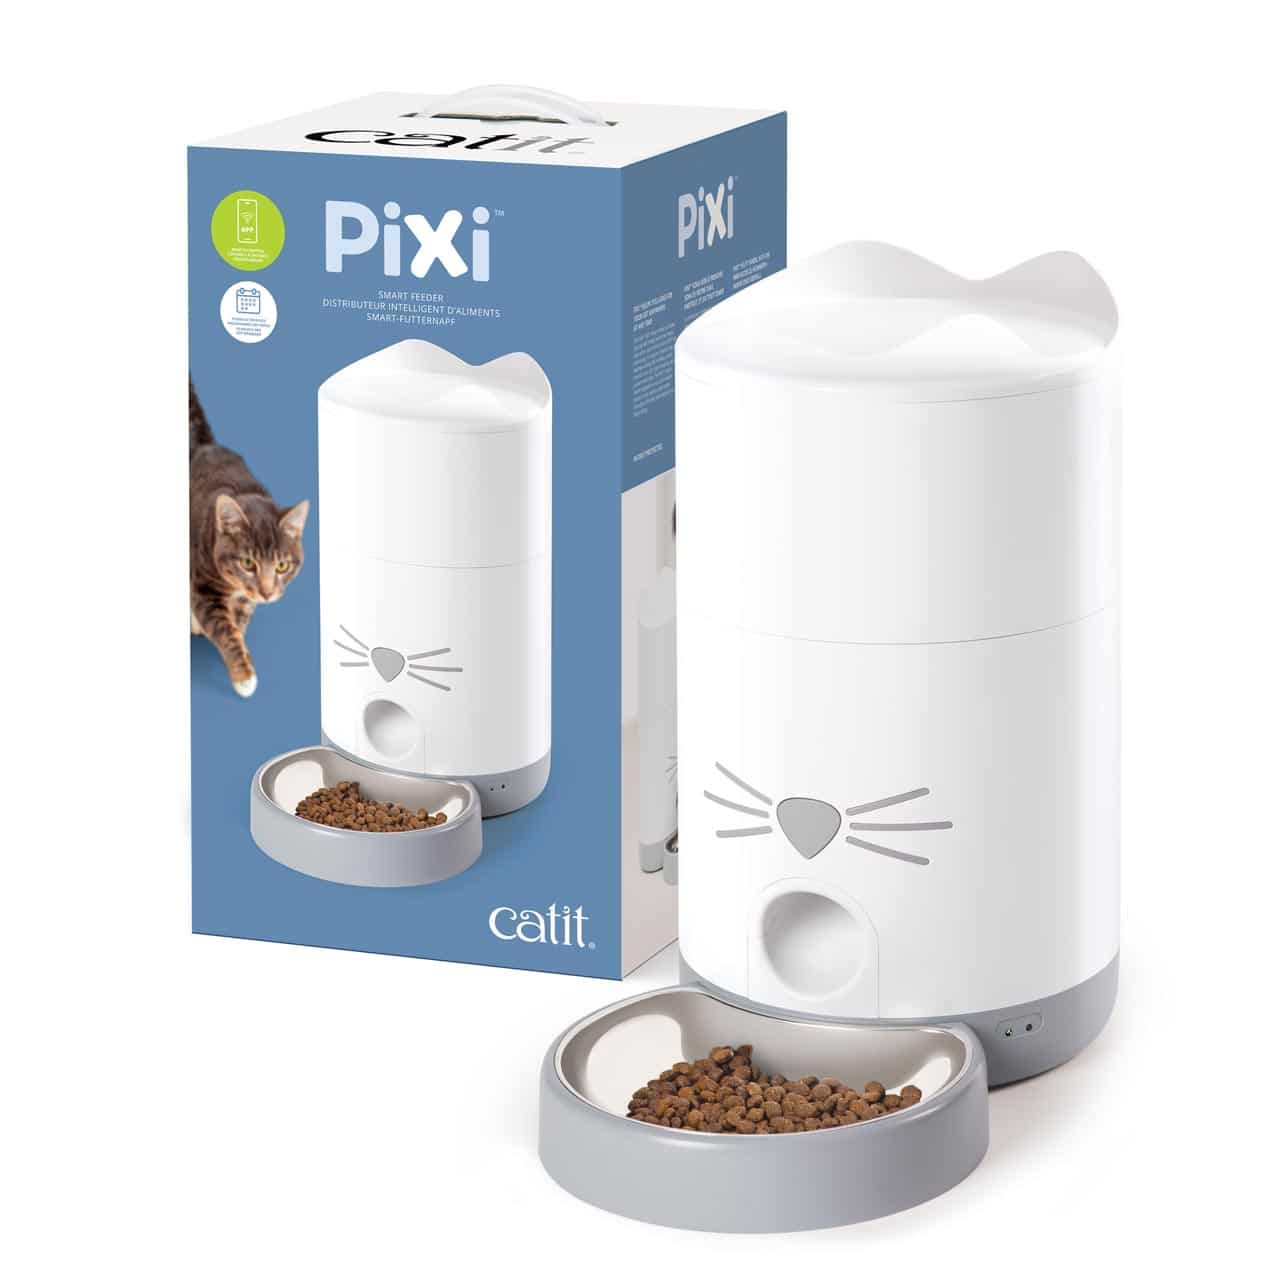 PIXI Smart-Futterautomat und Verpackung